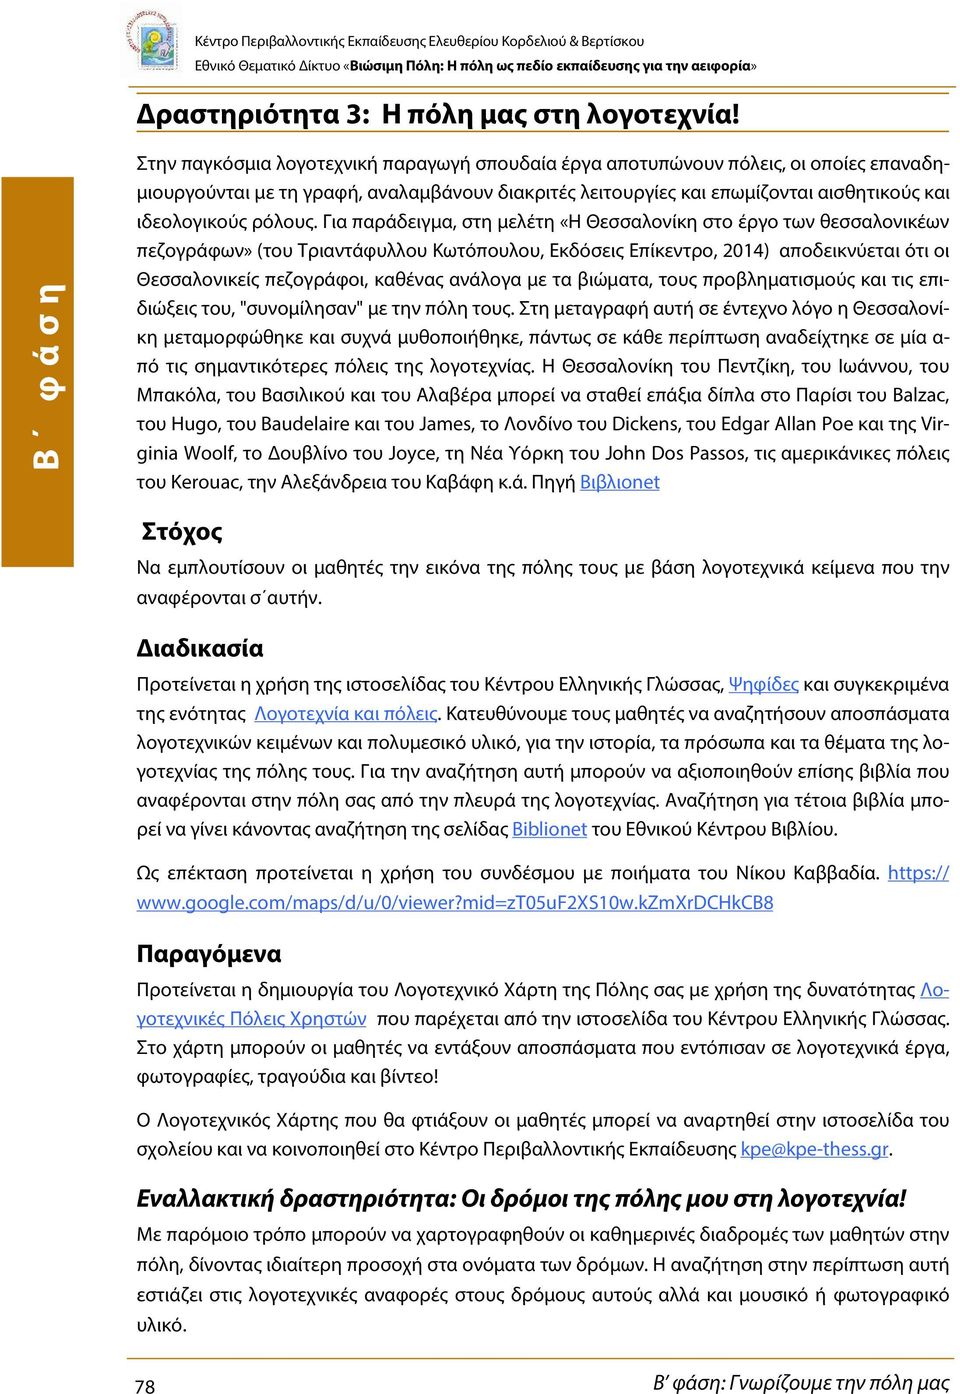 Για παράδειγμα, στη μελέτη «Η Θεσσαλονίκη στο έργο των θεσσαλονικέων πεζογράφων» (του Τριαντάφυλλου Κωτόπουλου, Εκδόσεις Επίκεντρο, 2014) αποδεικνύεται ότι οι Θεσσαλονικείς πεζογράφοι, καθένας